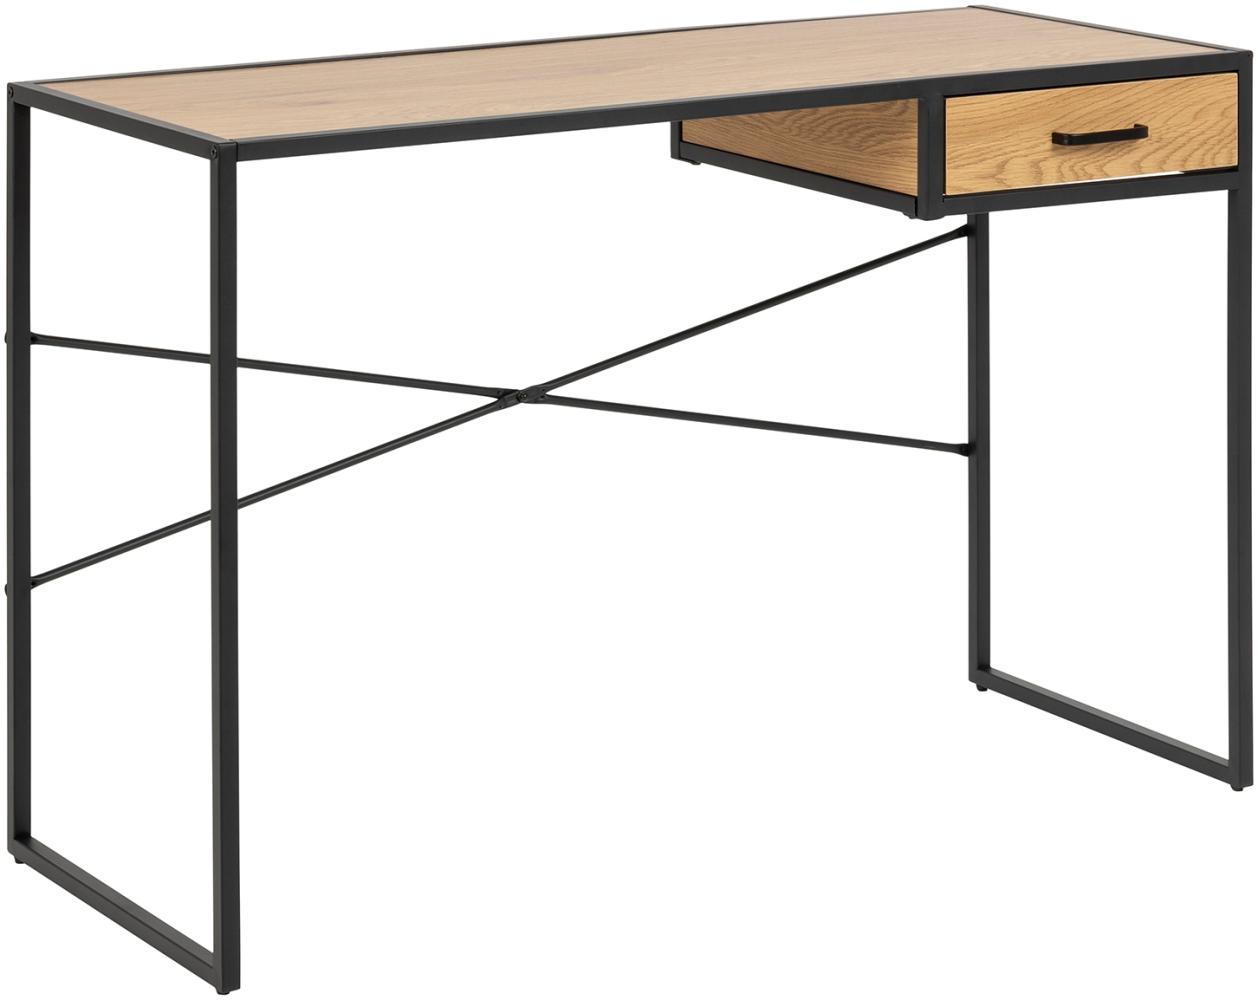 Schreibtisch >Carney< in Wildeiche aus Metall - 110x75x45cm (BxHxT) Bild 1